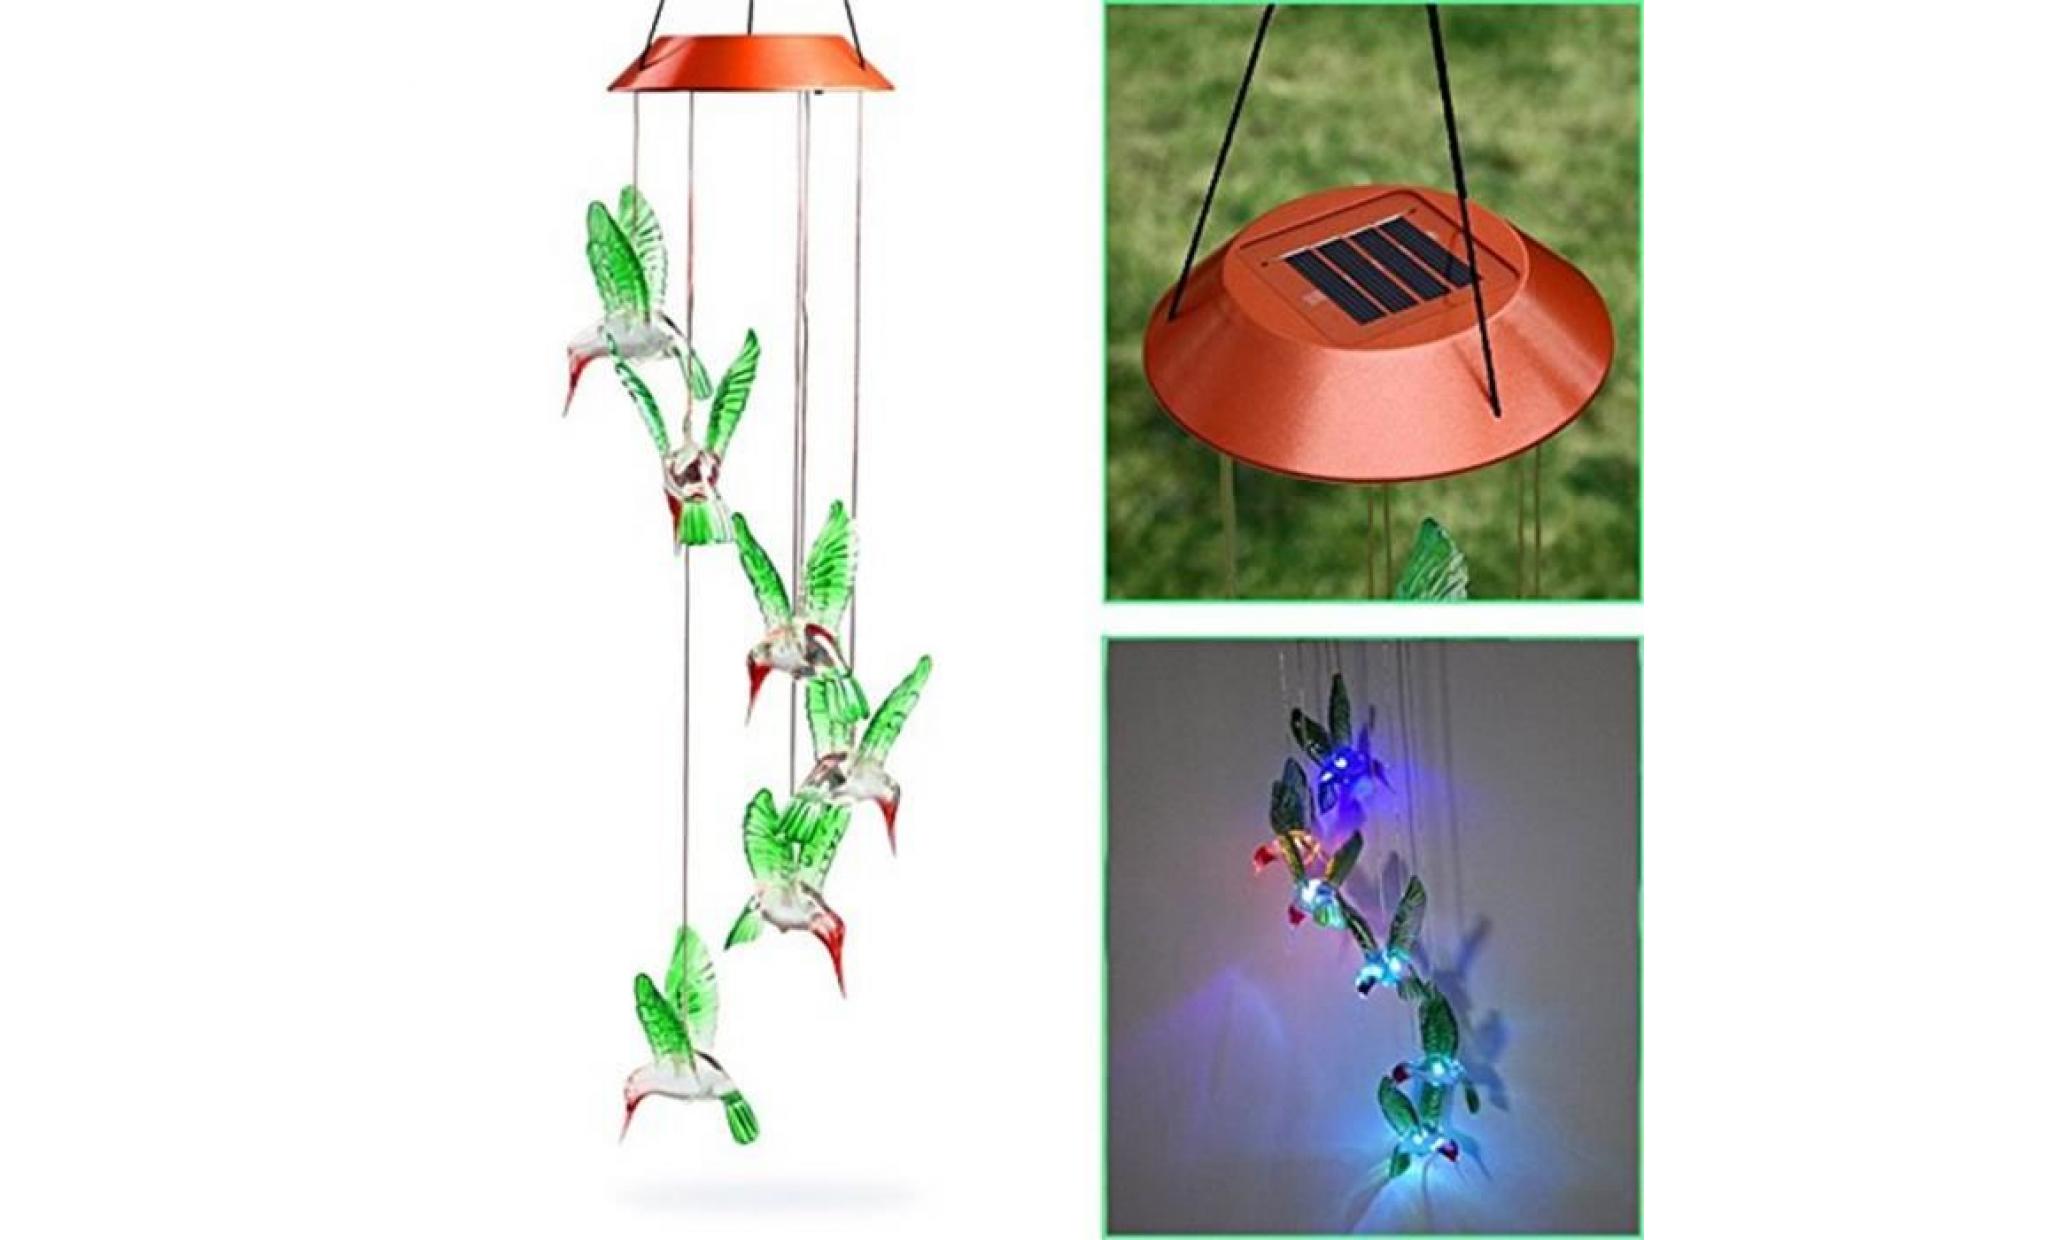 couleur changeant le vent solaire de colibri de carillon de vent de led pour l'éclairage de jardinage@zsy292